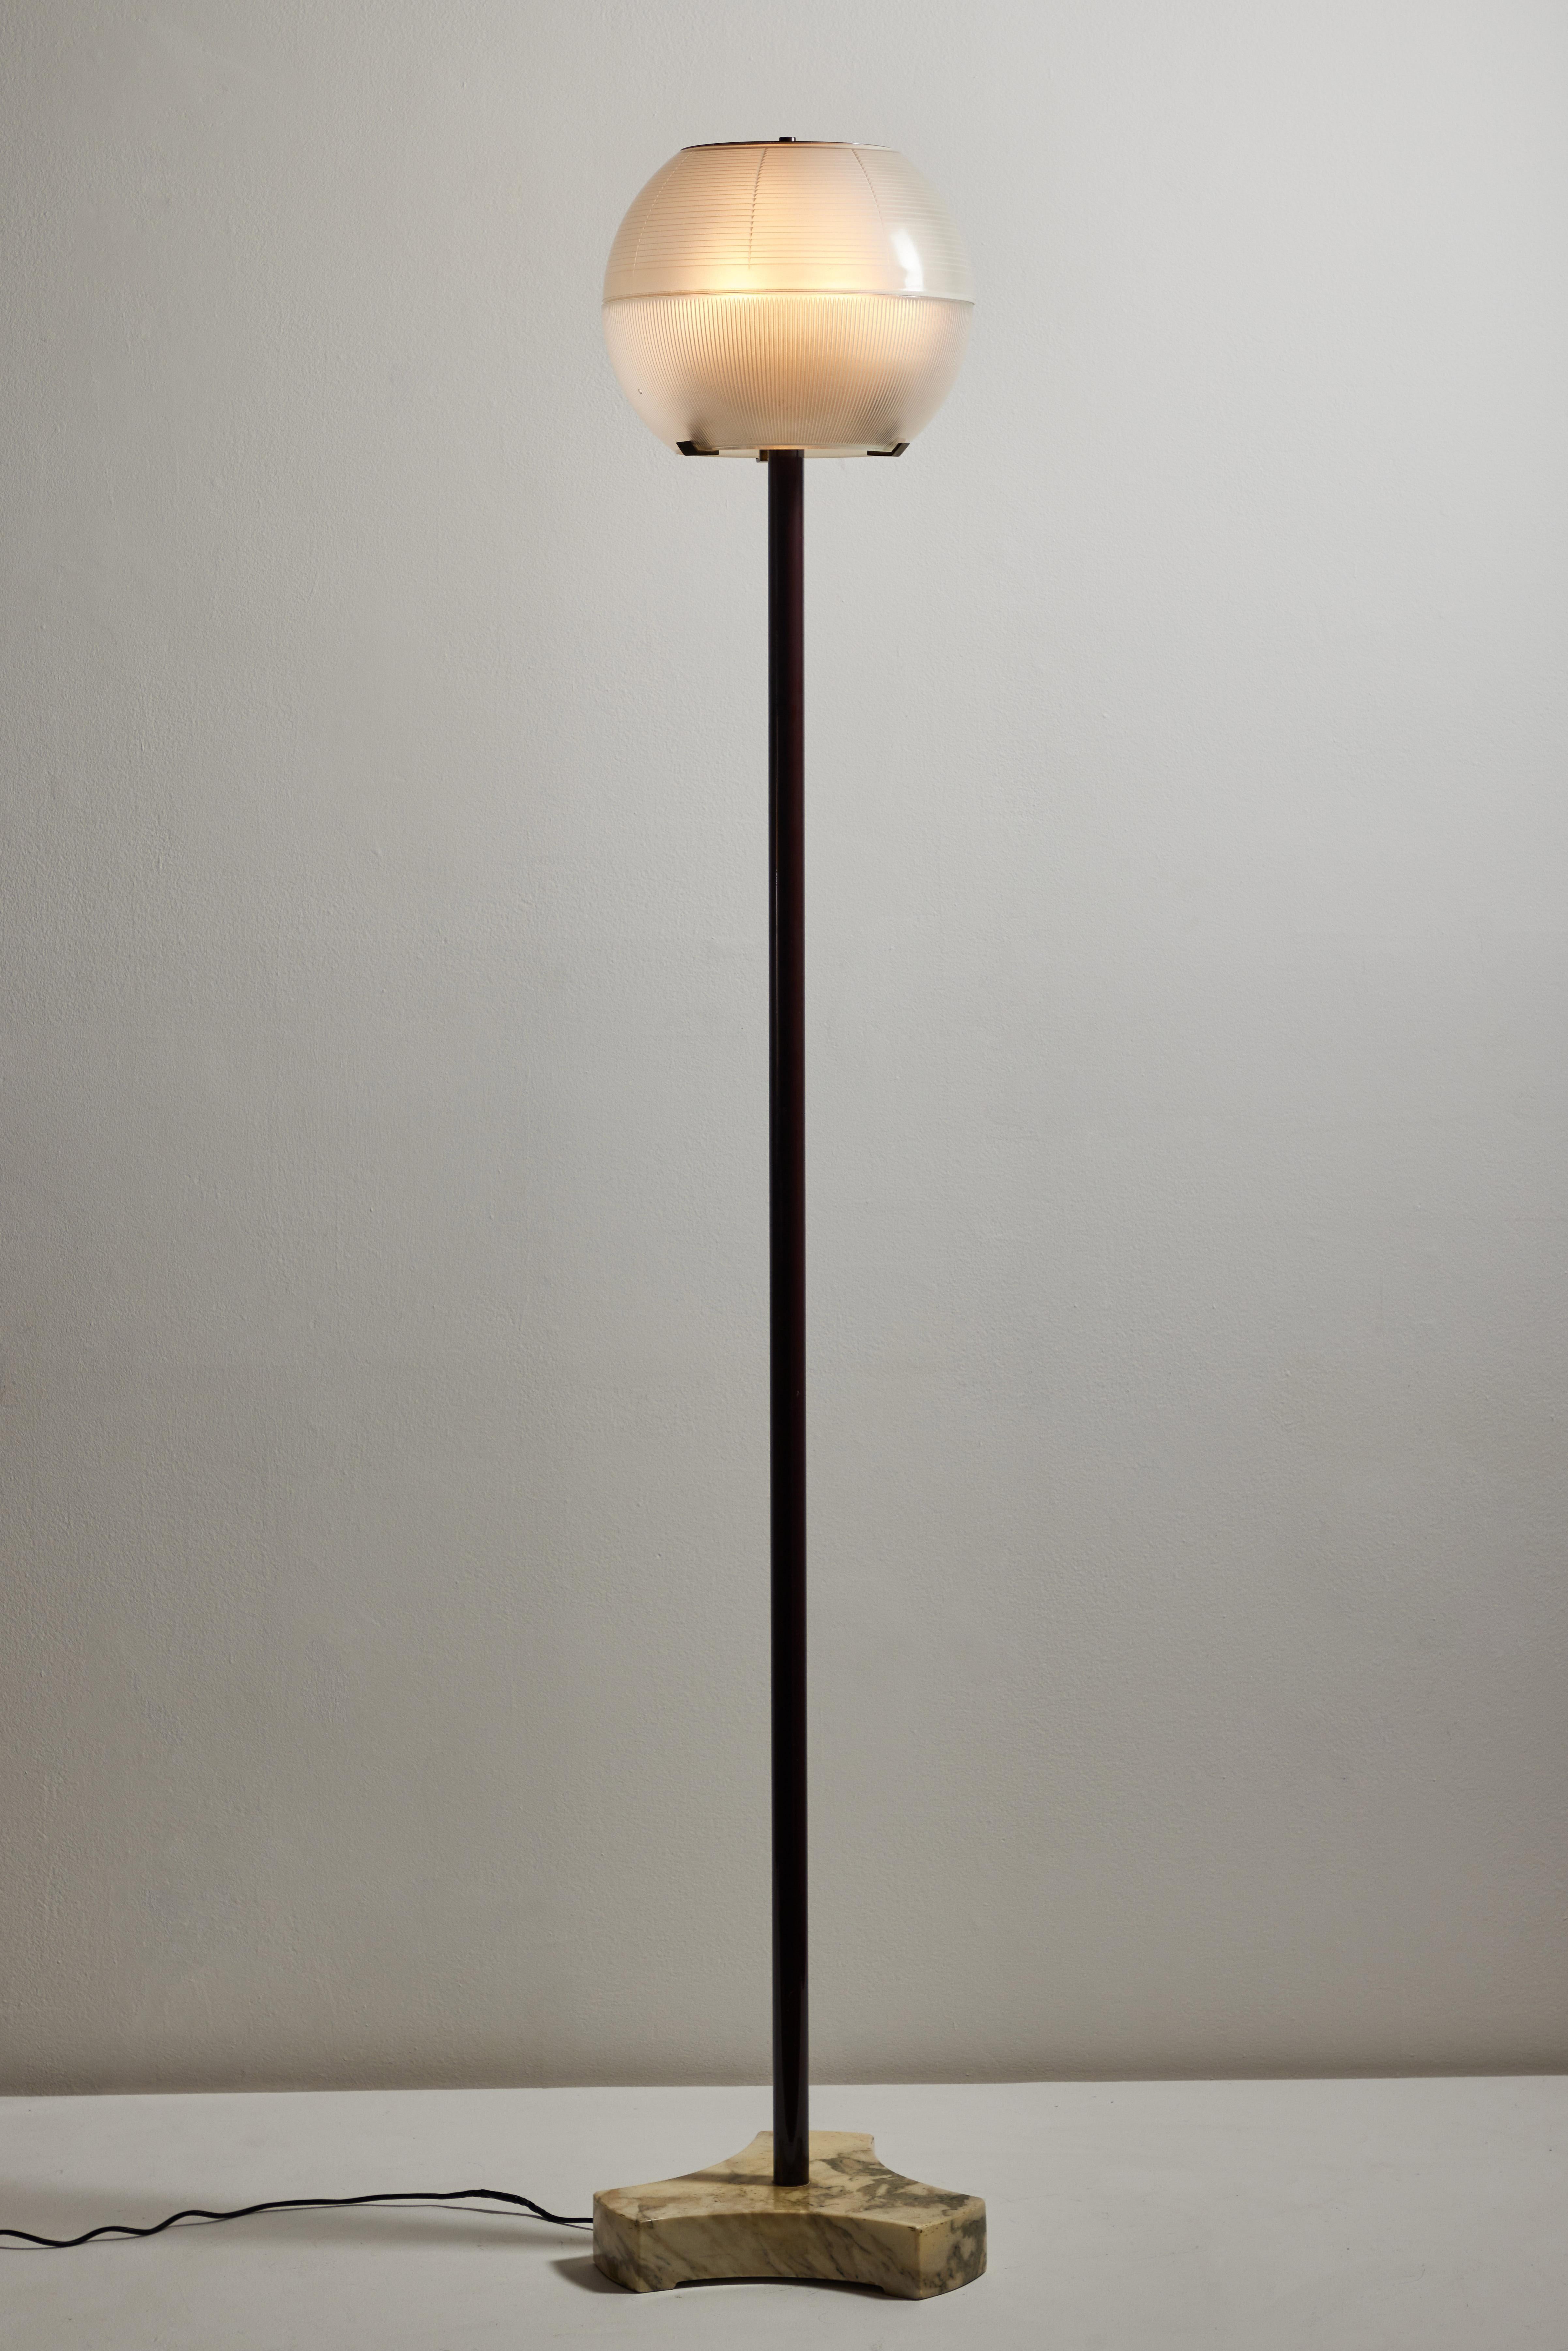 Italian Model LTE 8 Floor Lamp by Ignazio Gardella for Azucena